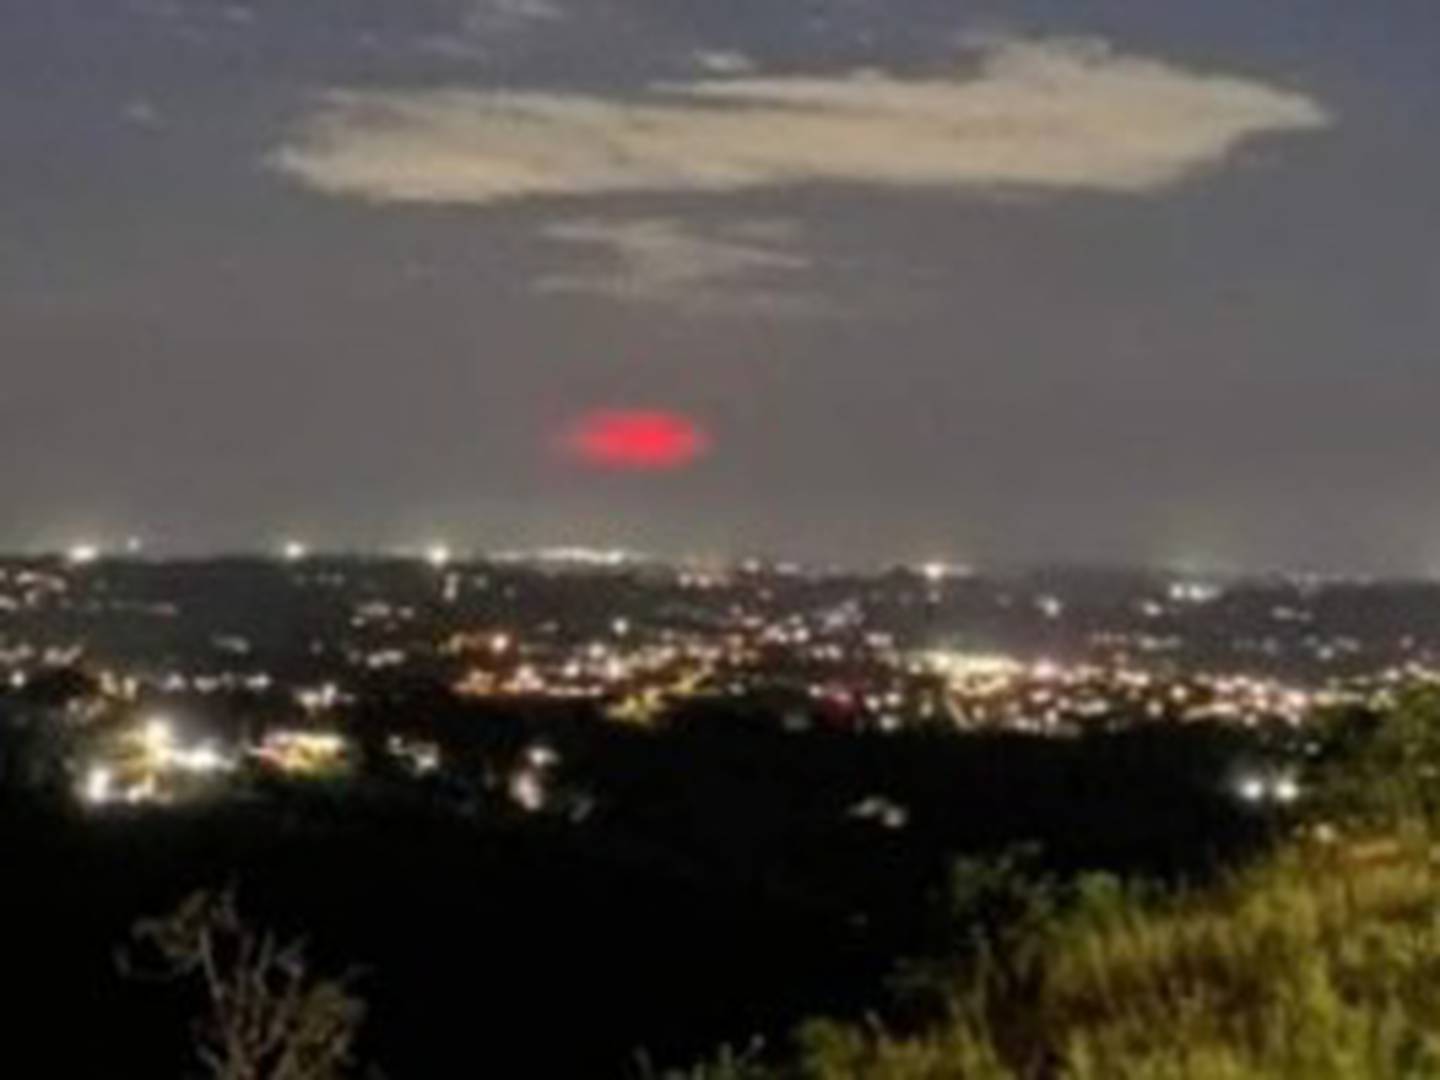 Exclusiva Noticias - ATENCIÓN!!! REPORTAN UNA EXTRAÑA LUZ ROJA EN EL CIELO  DE GUALÁN! Nos escriben varias personas comentándonos sobre una luz roja  que pudo ser observada en el cielo de Gualán